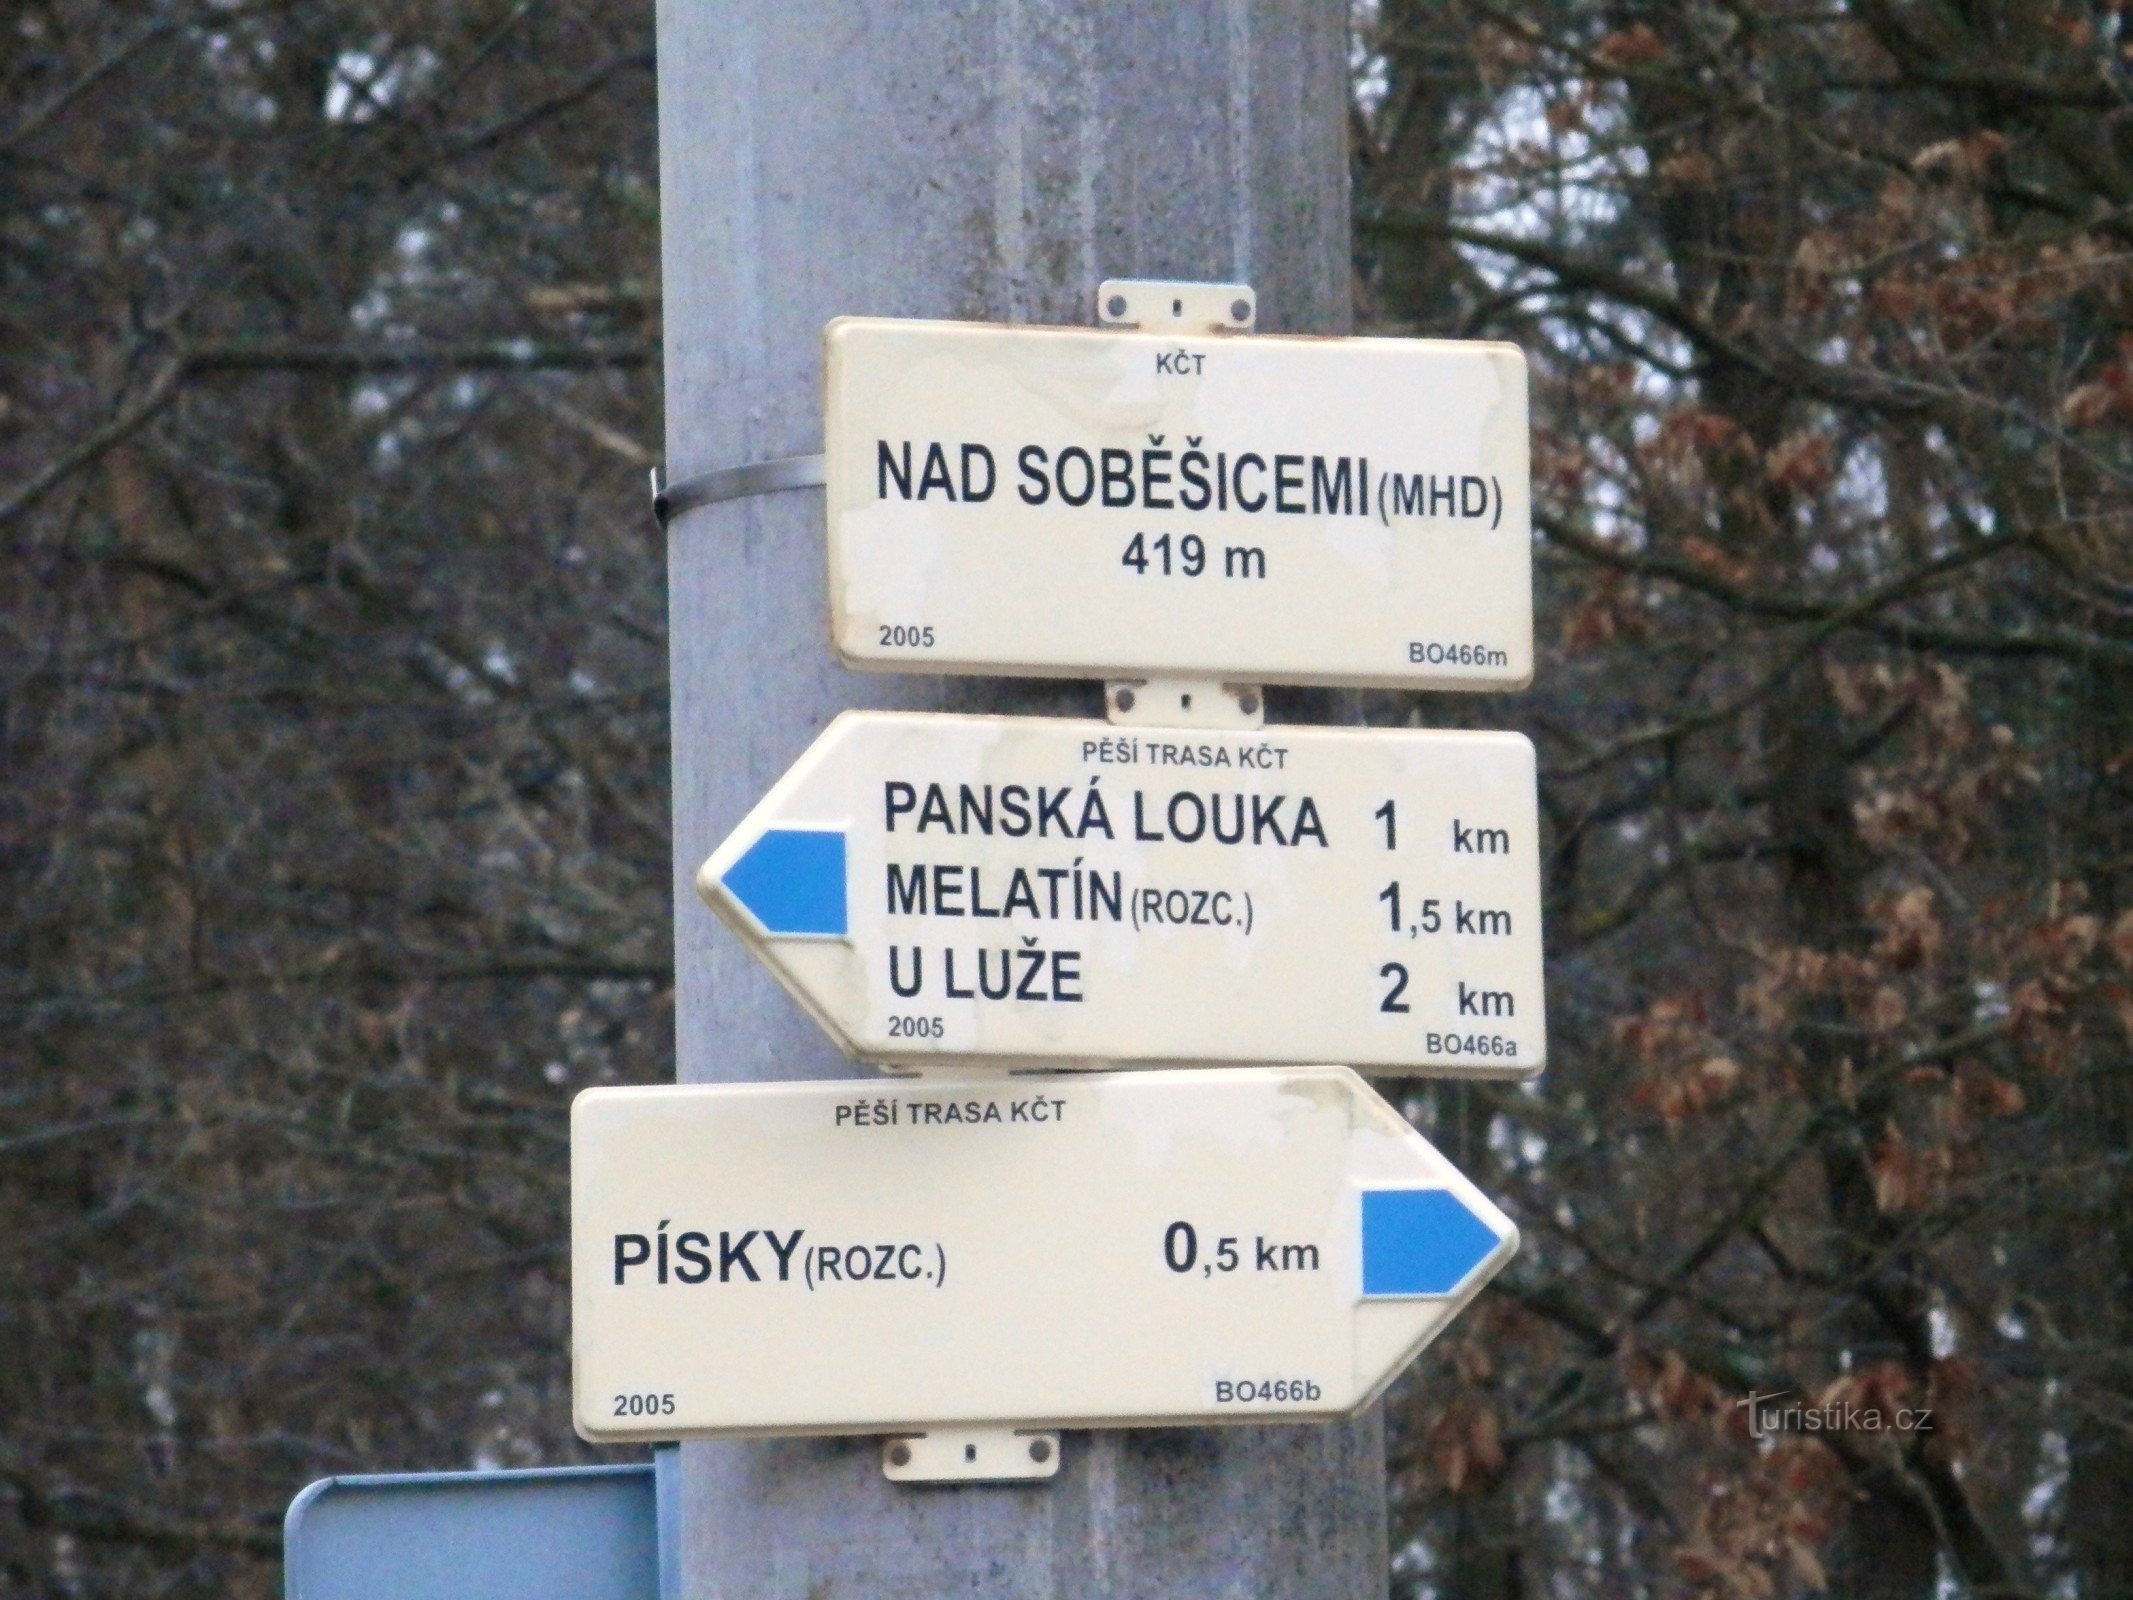 Nad Soběšicemi (transporte público) - junção de rotas turísticas marcadas